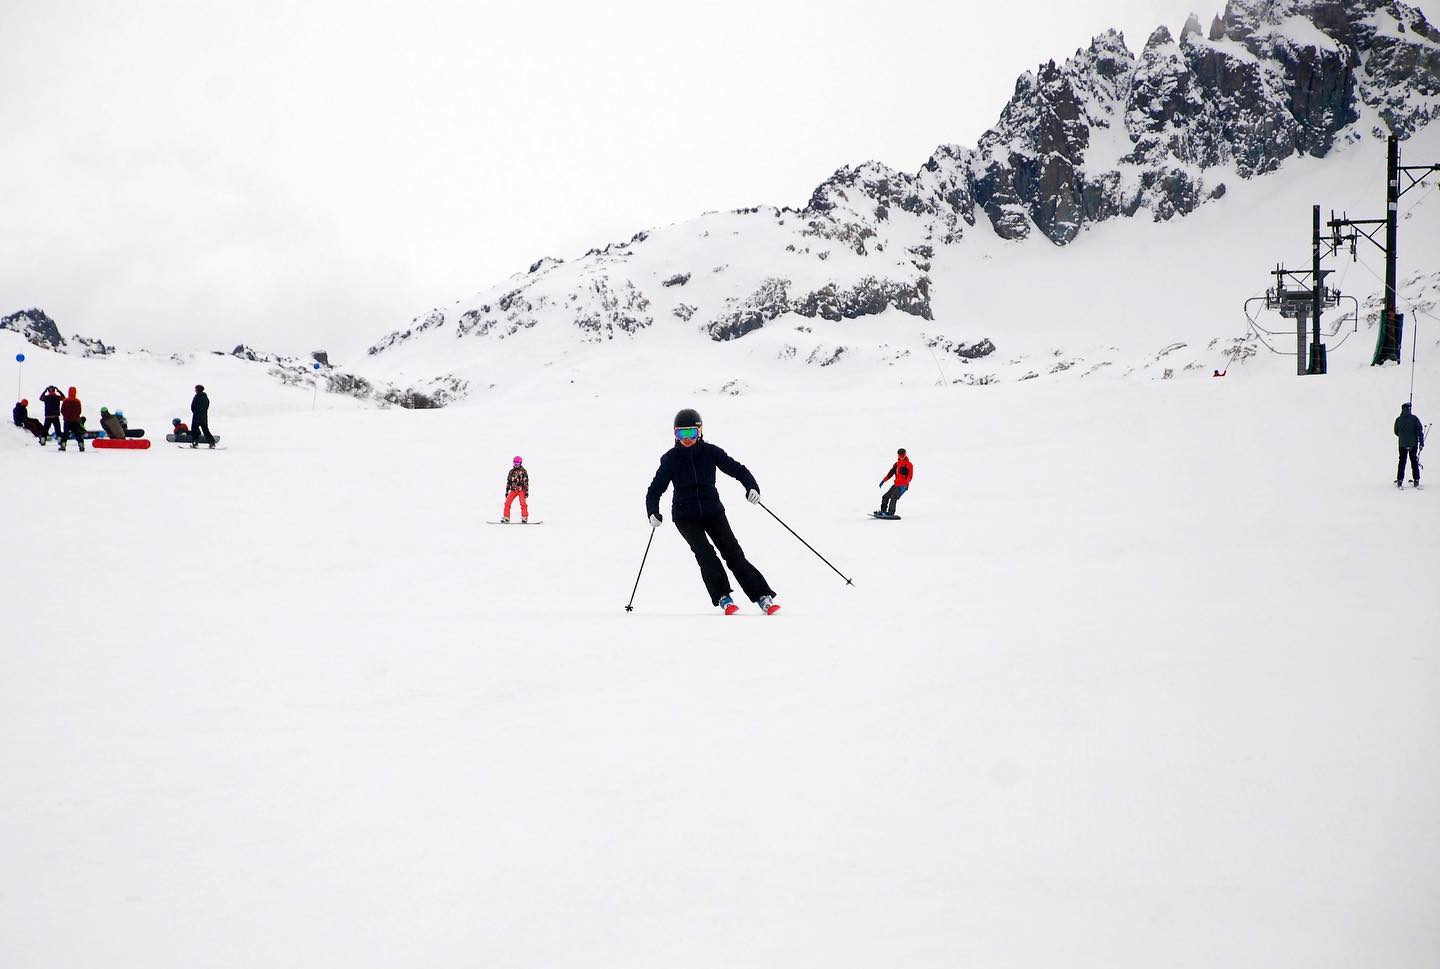 El cerro Perito Moreno abrió el sábado y residentes y turistas ya disfrutan del esquí en sus pistas. Foto: @guunproducciones 